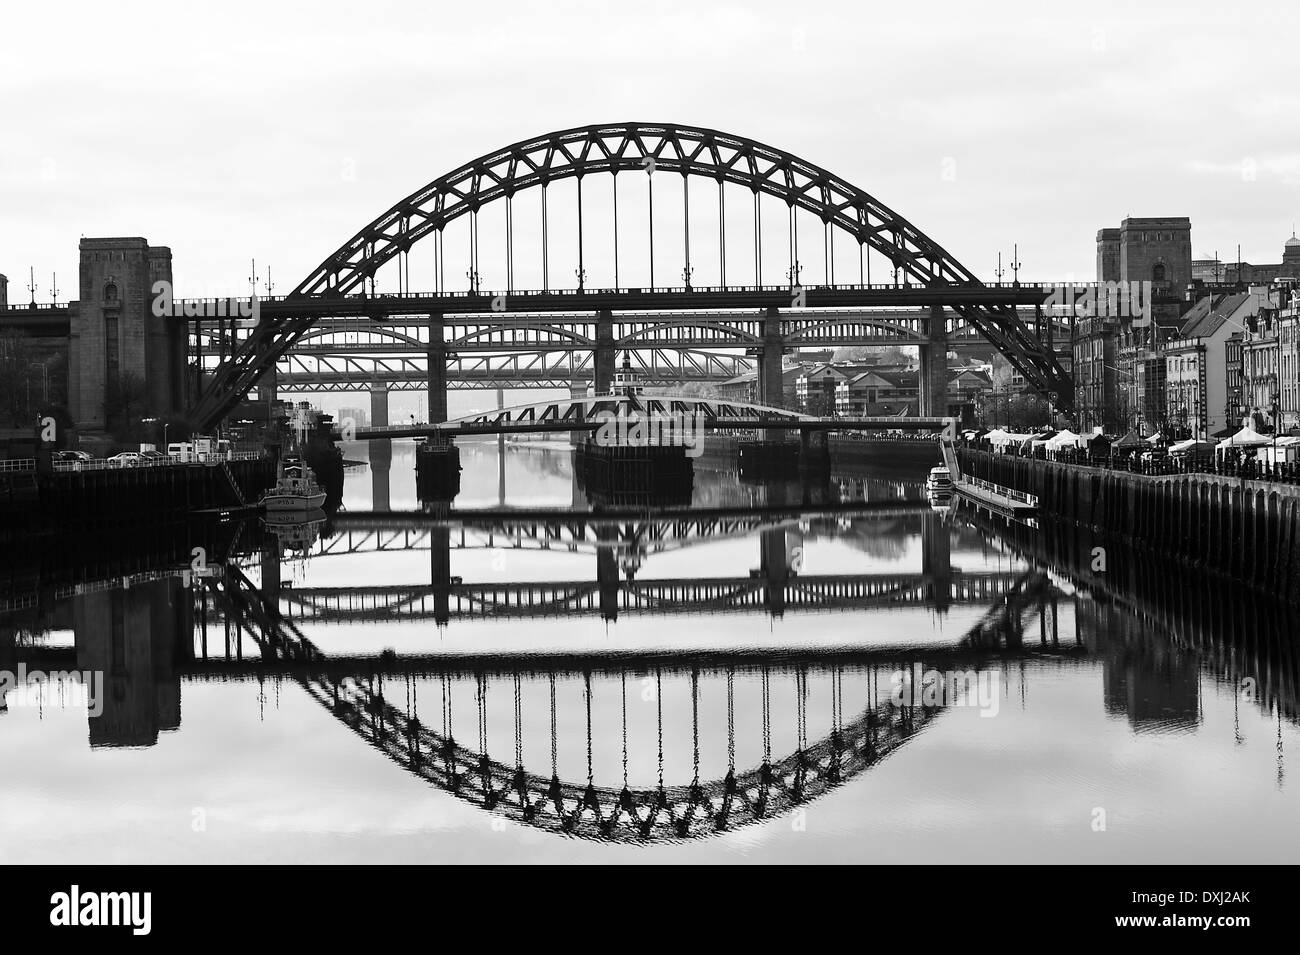 Image miroir Reflets de la Tyne et de ponts dans la région de Tyne à Newcastle Quayside Angleterre Royaume-Uni UK Banque D'Images